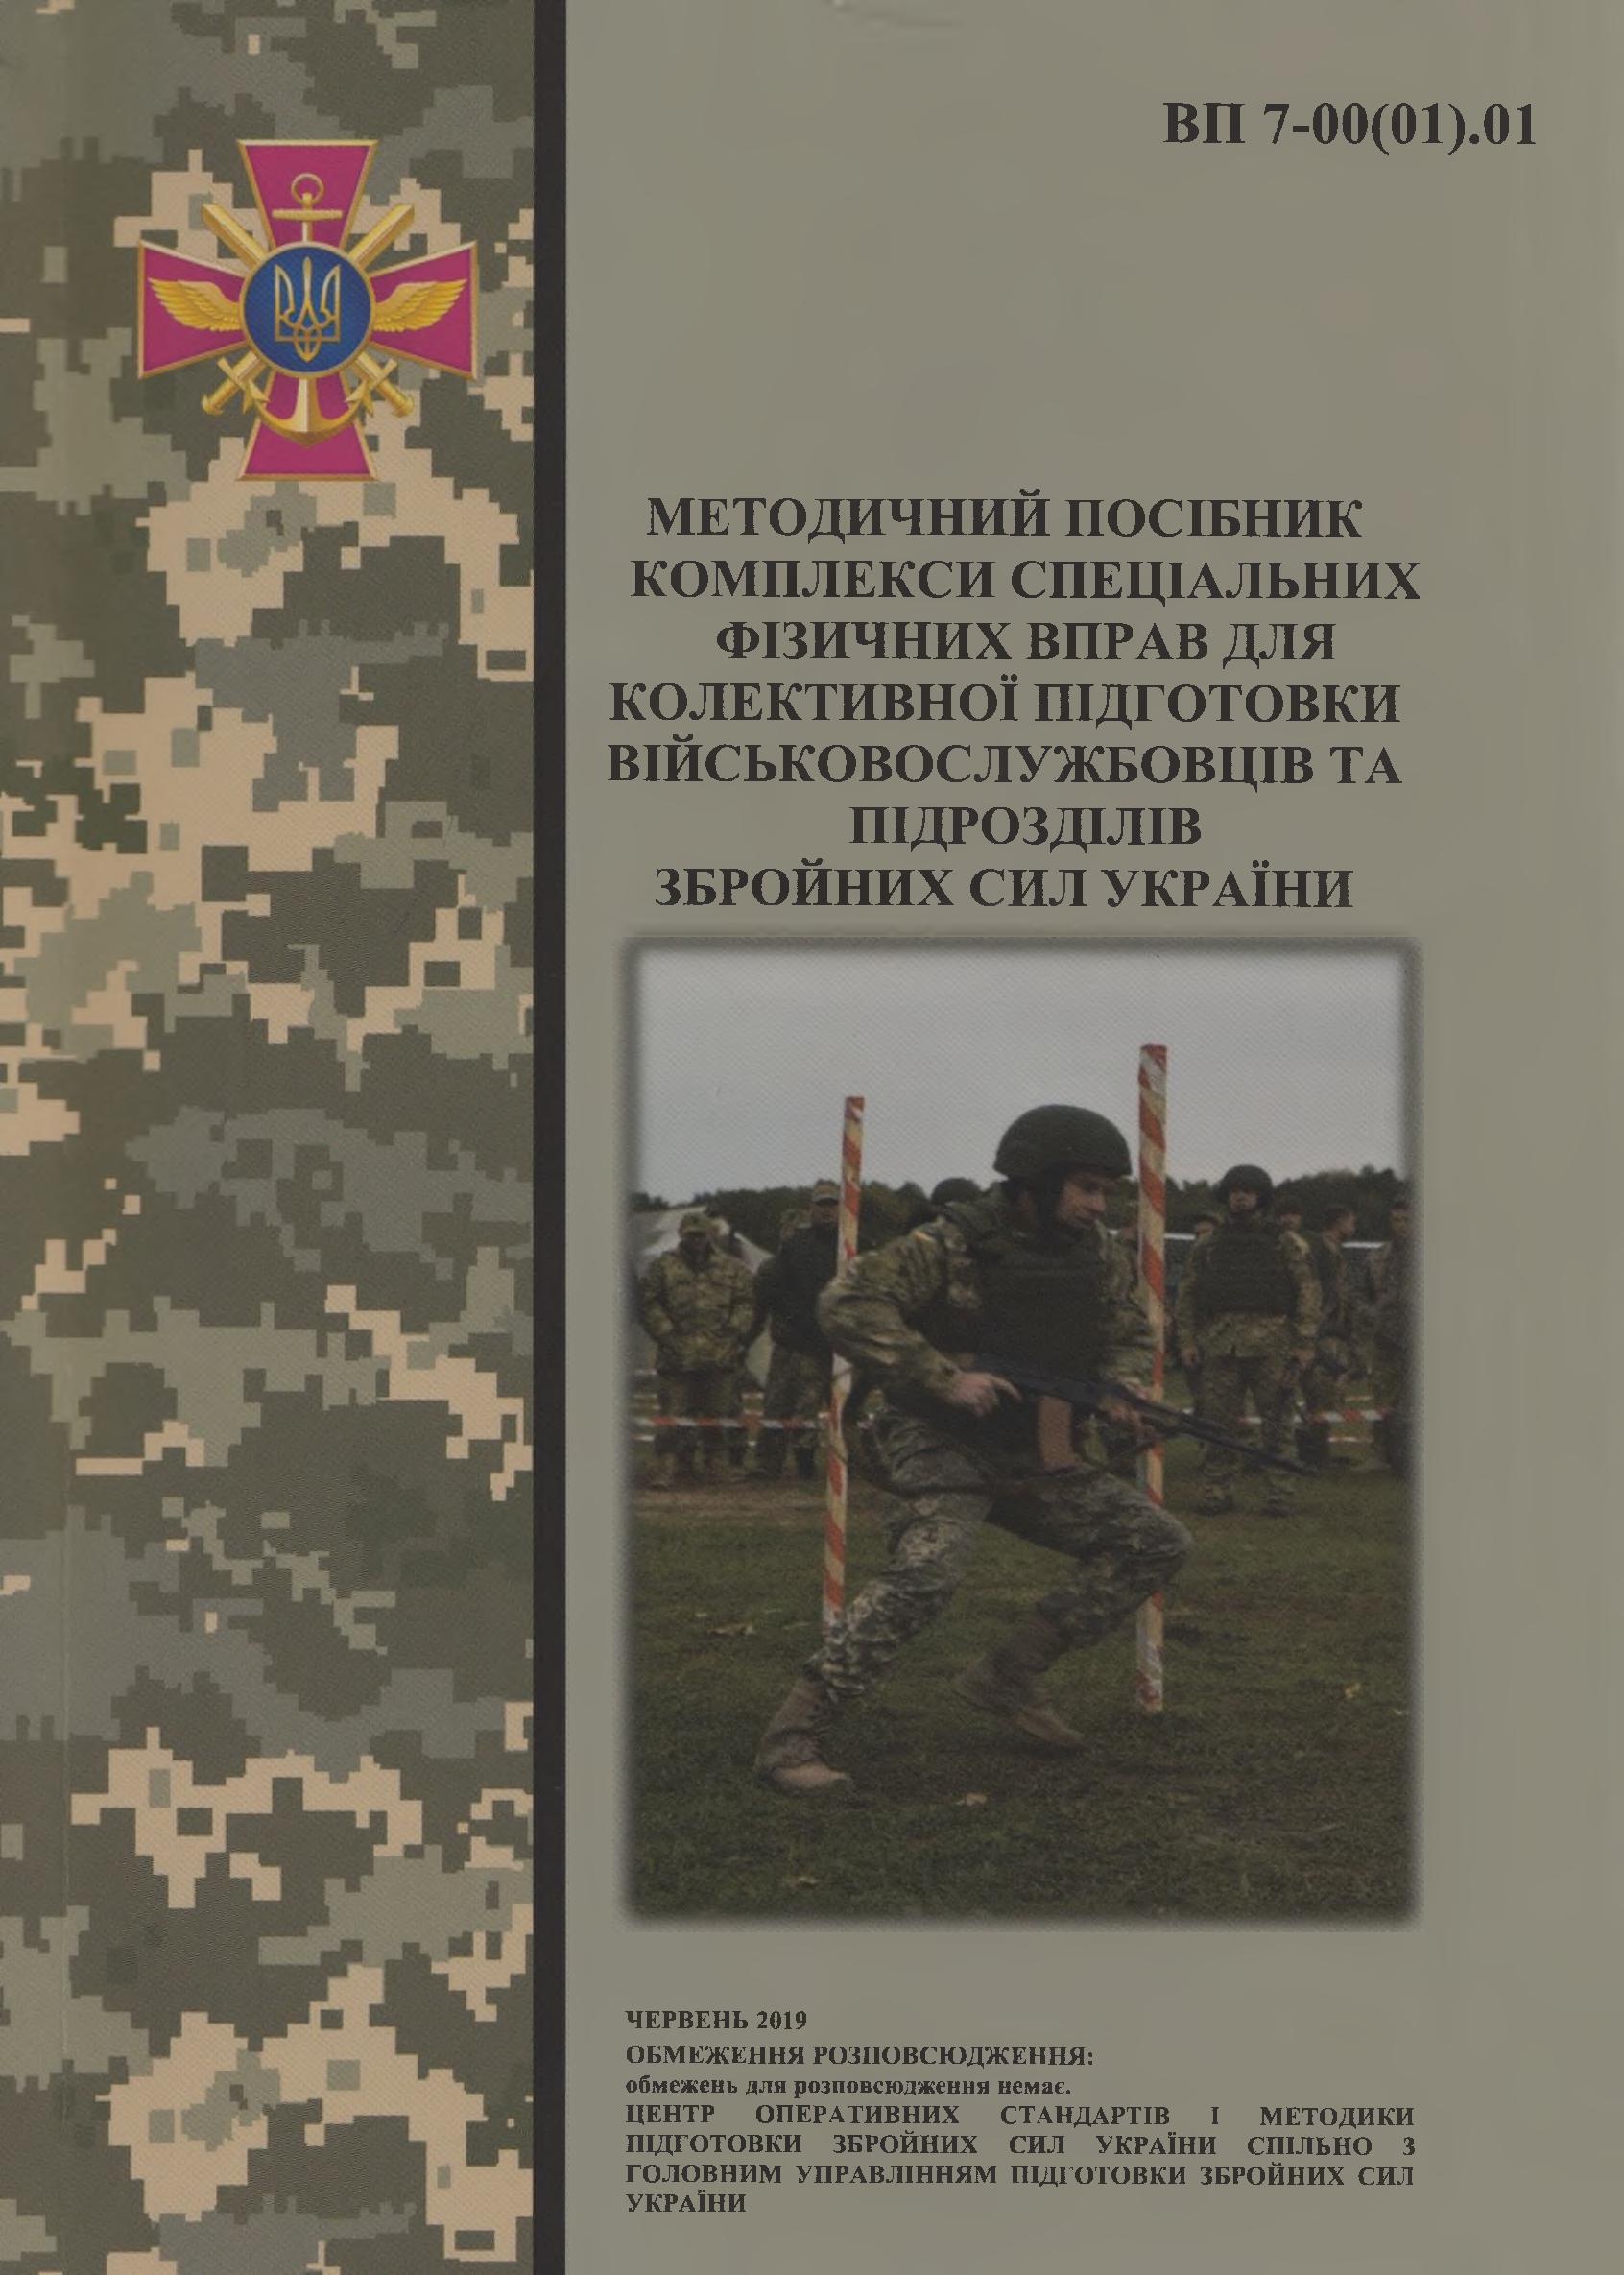 Комплекси спеціальних фізичних вправ для колективної підготовки військовослужбовців та підрозділів Збройних Сил України : методичний посібник